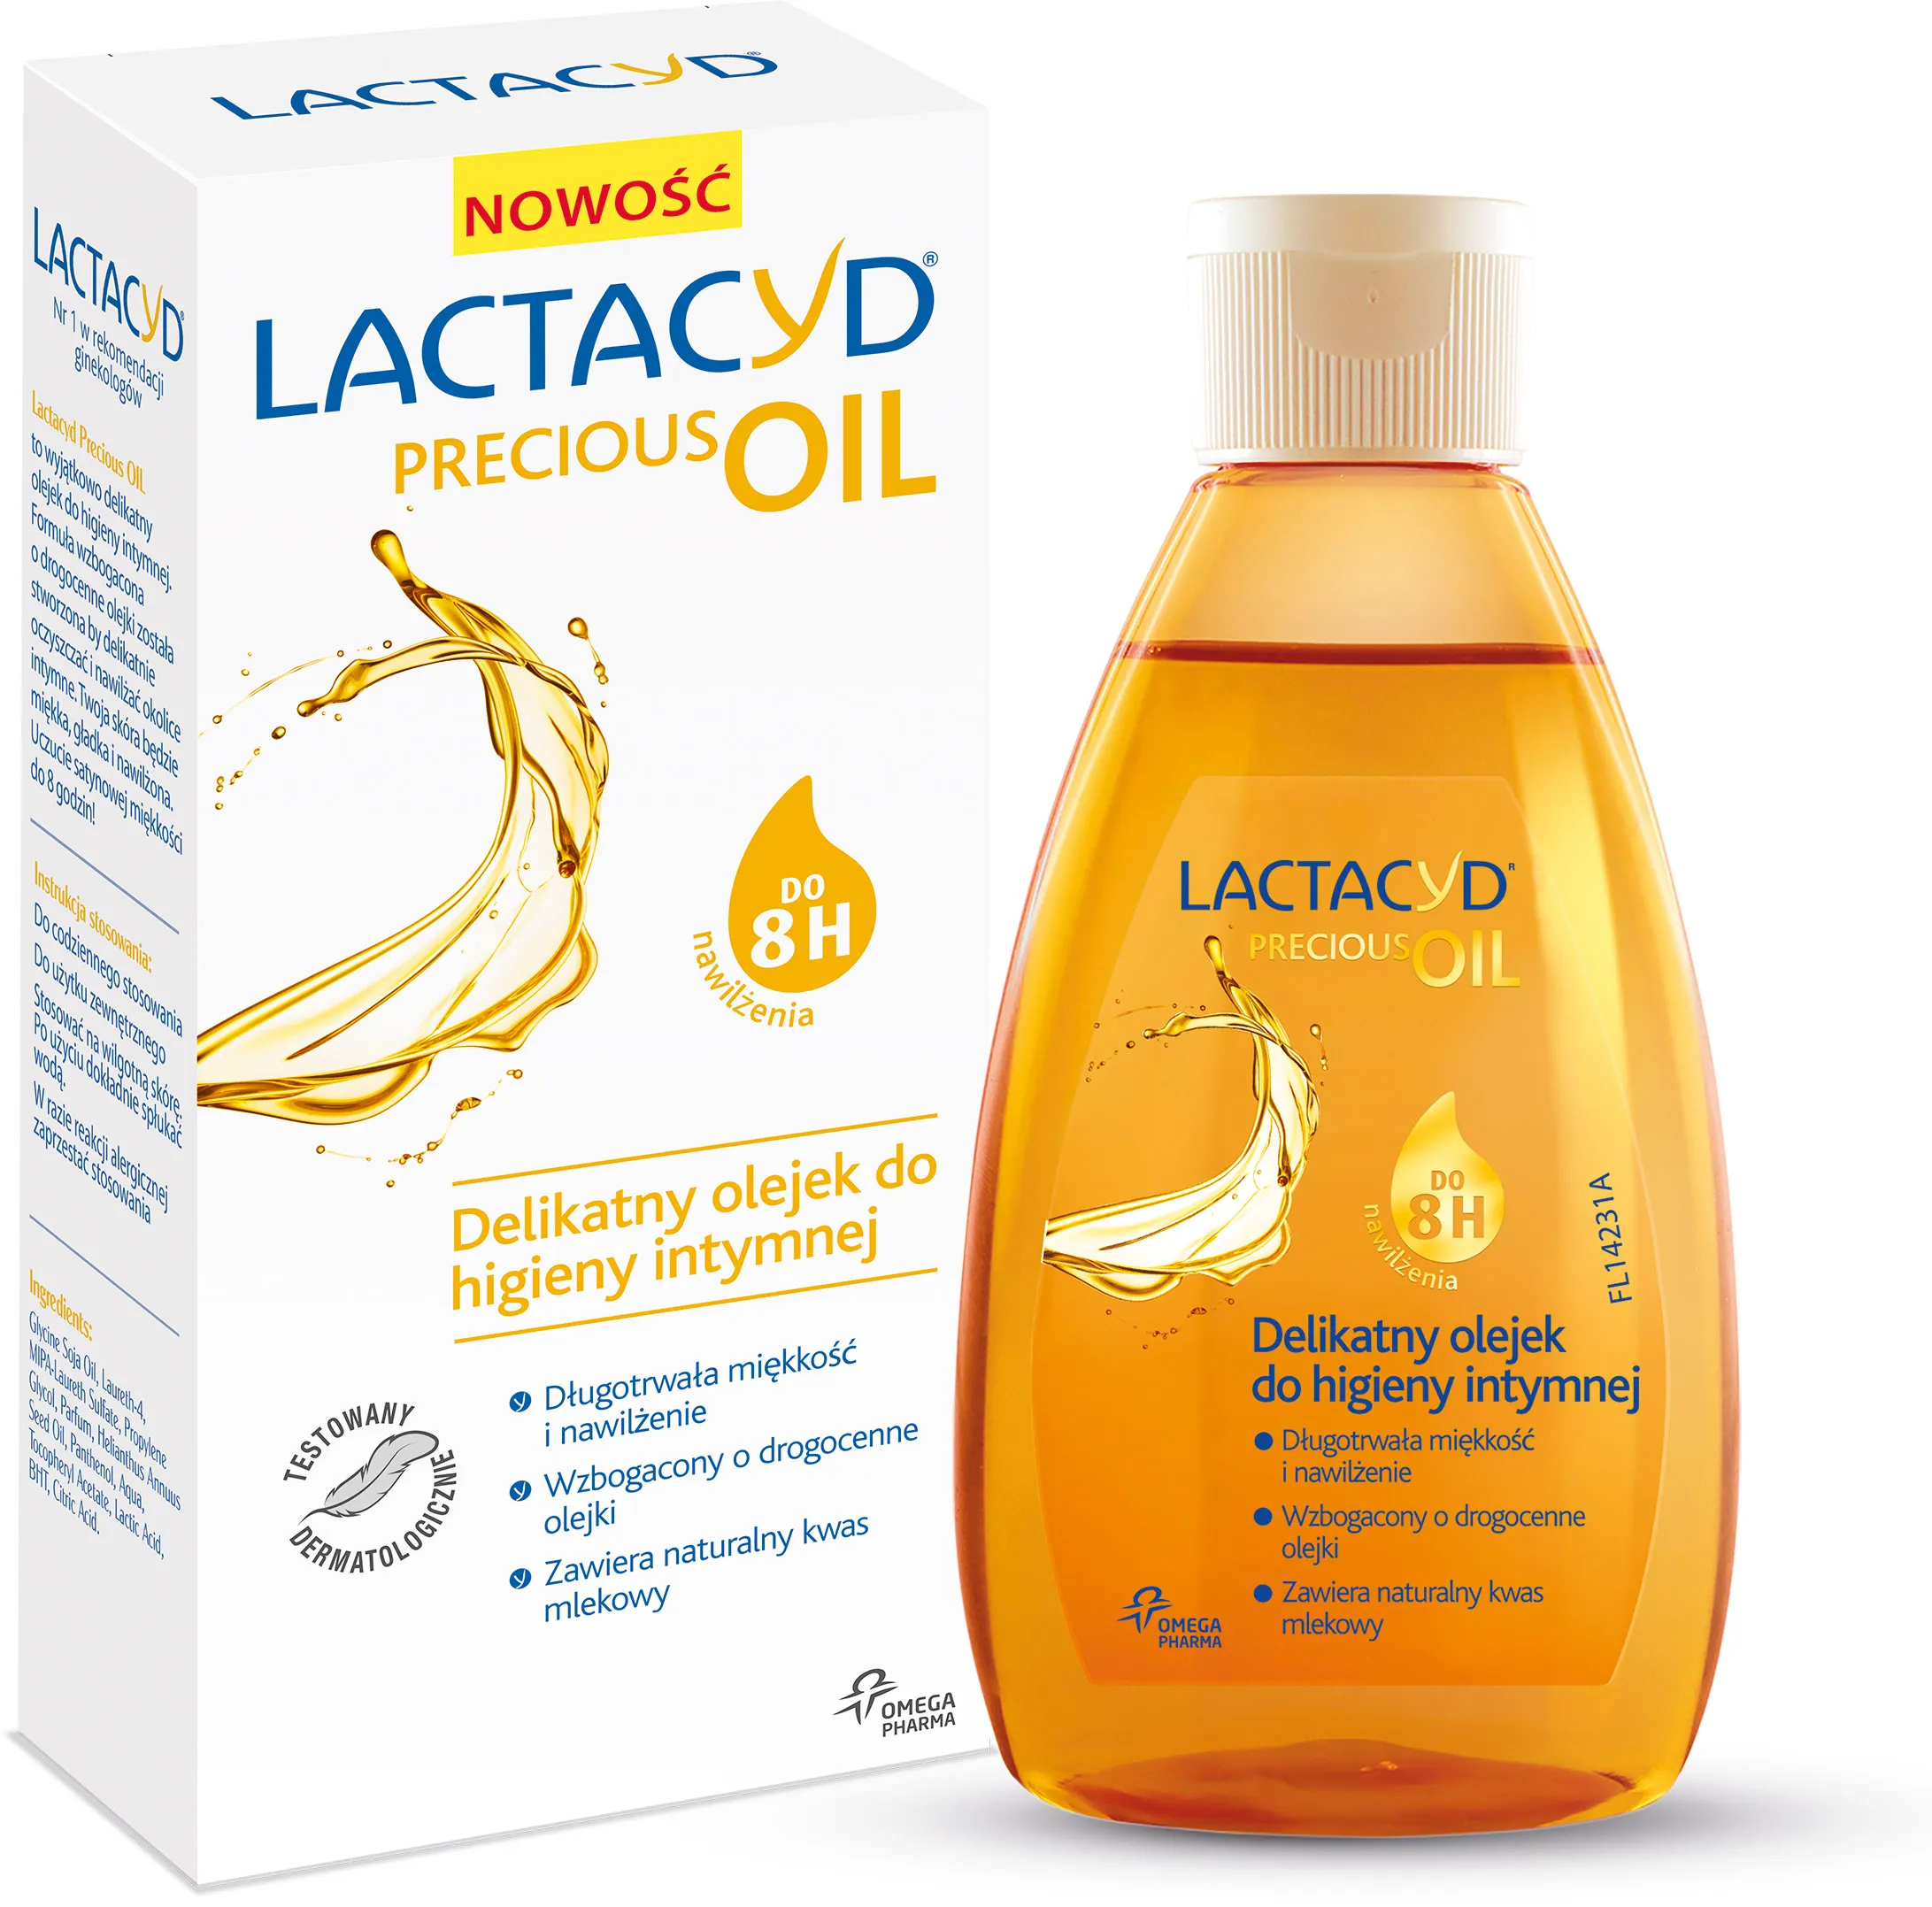 Lactacyd Precious Oil, delikatny olejek do higieny intymnej, 200 ml 